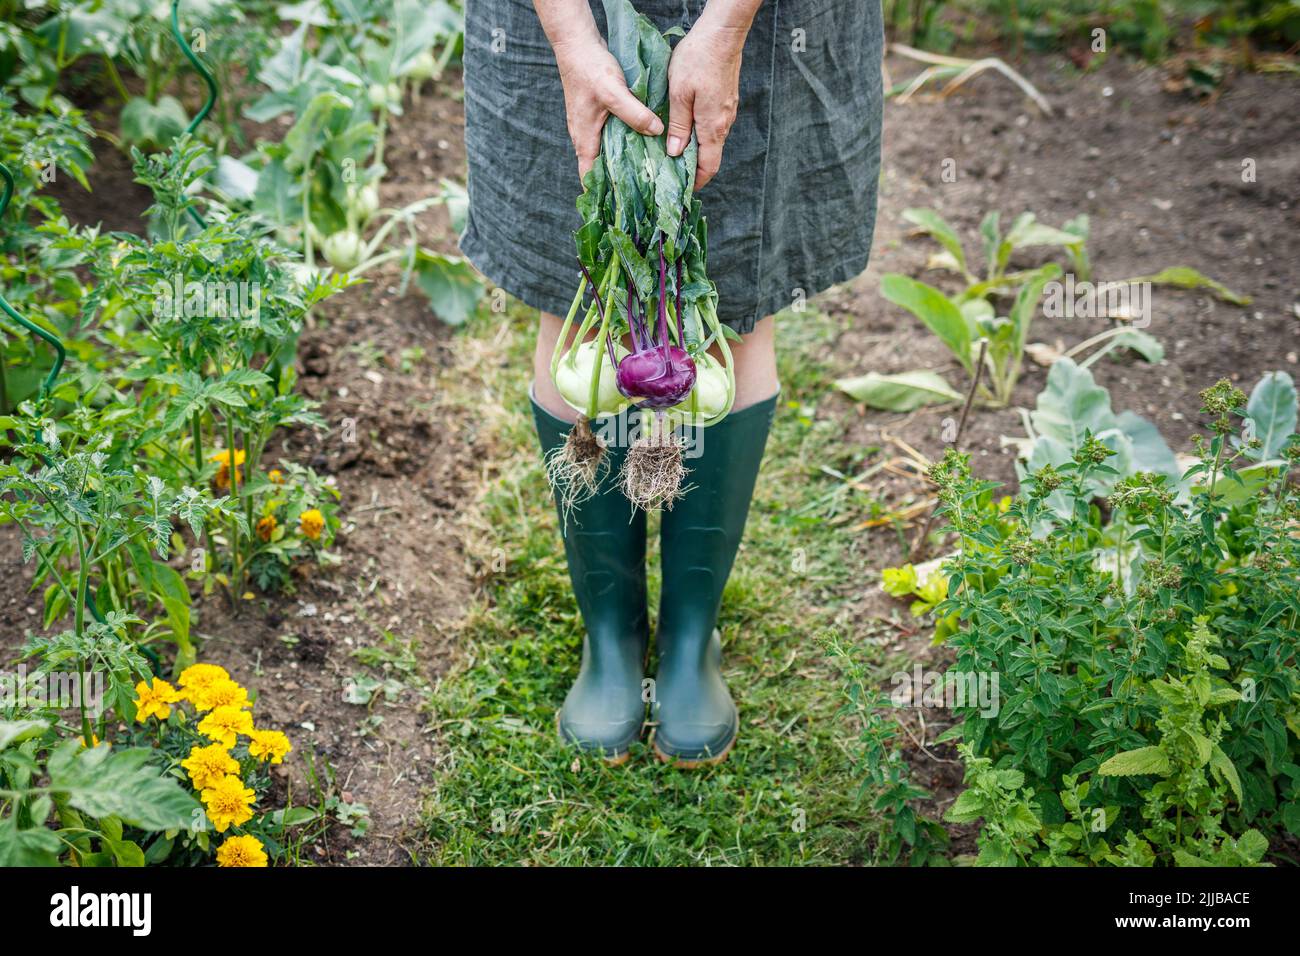 Organic gardening. Farmer holding harvested kohlrabi from vegetable garden Stock Photo